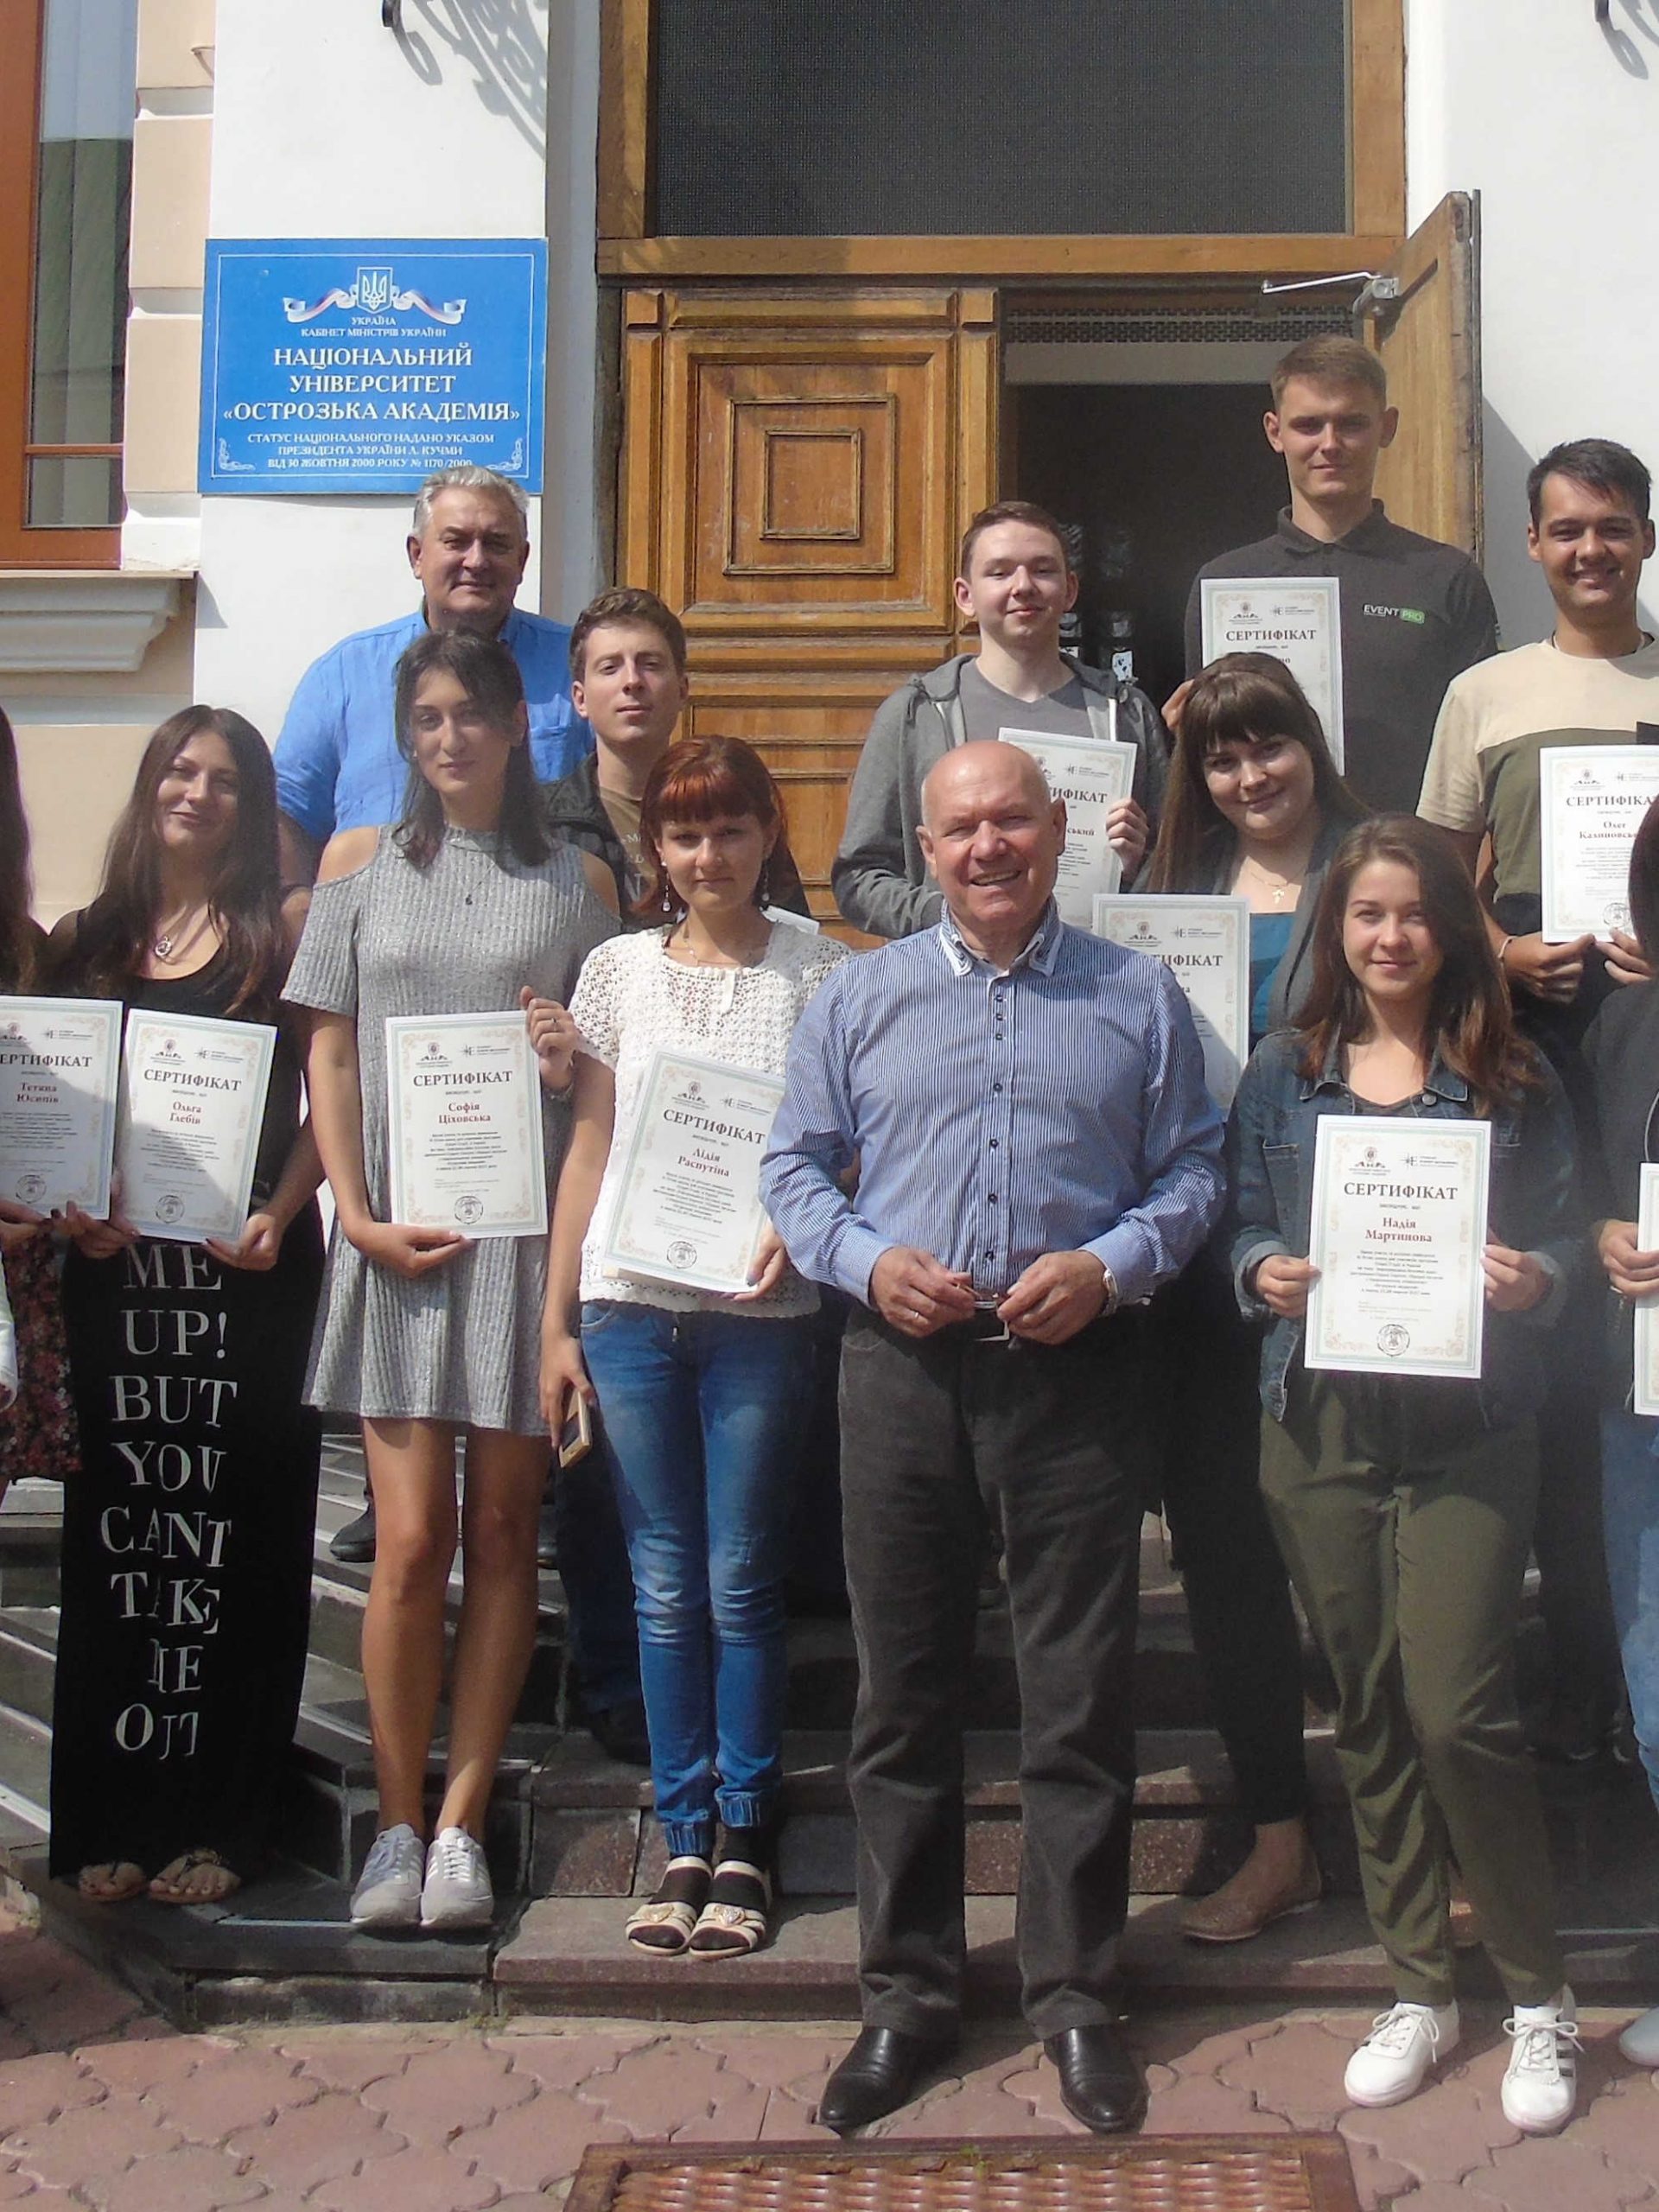 Wspólne zdjęcie wykładowców i studentów z rektorem akademii po wręczeniu certyfikatów.